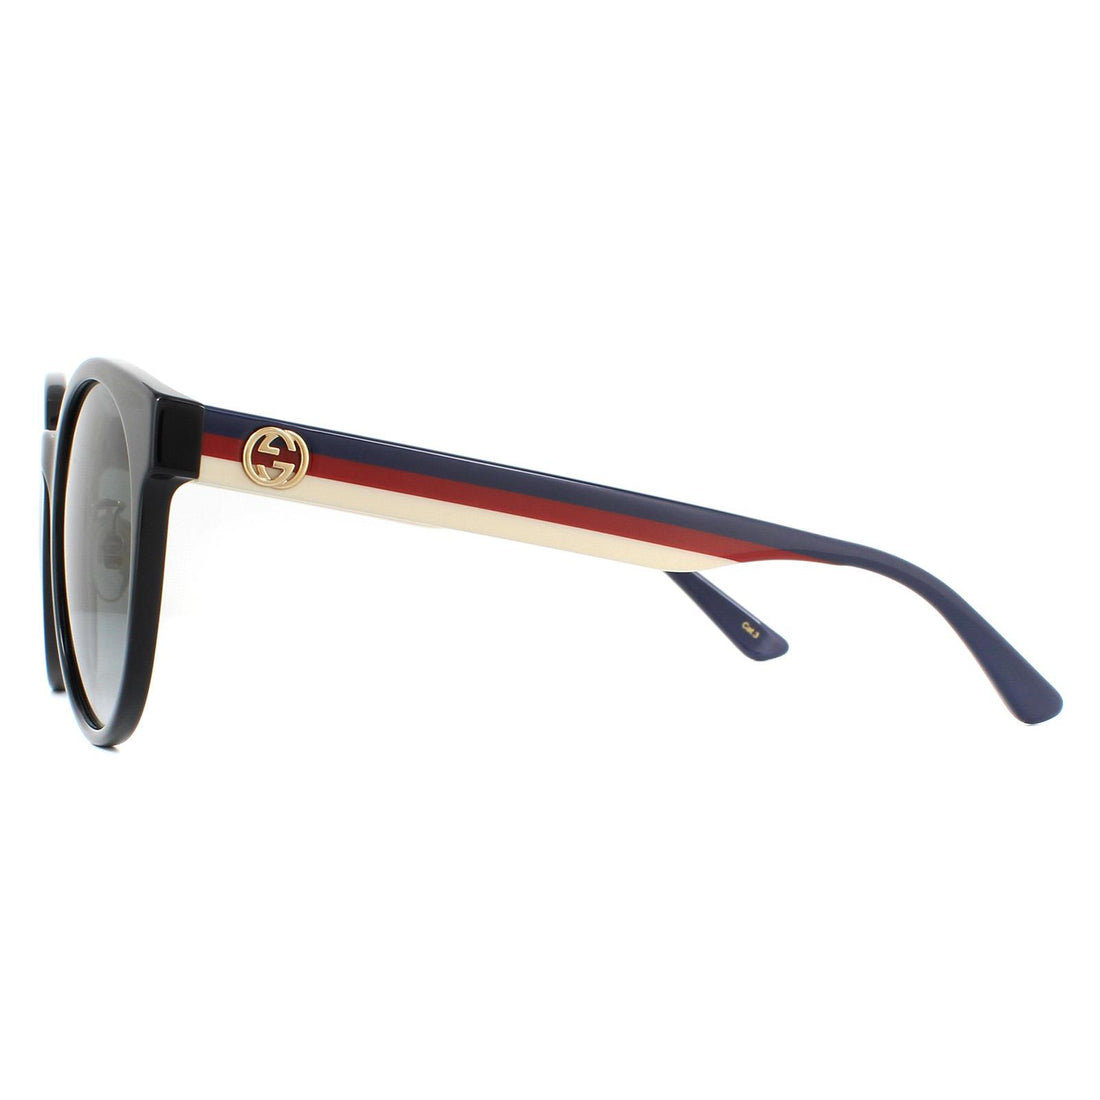 Gucci Sunglasses GG0416SK 001 Black Grey Gradient